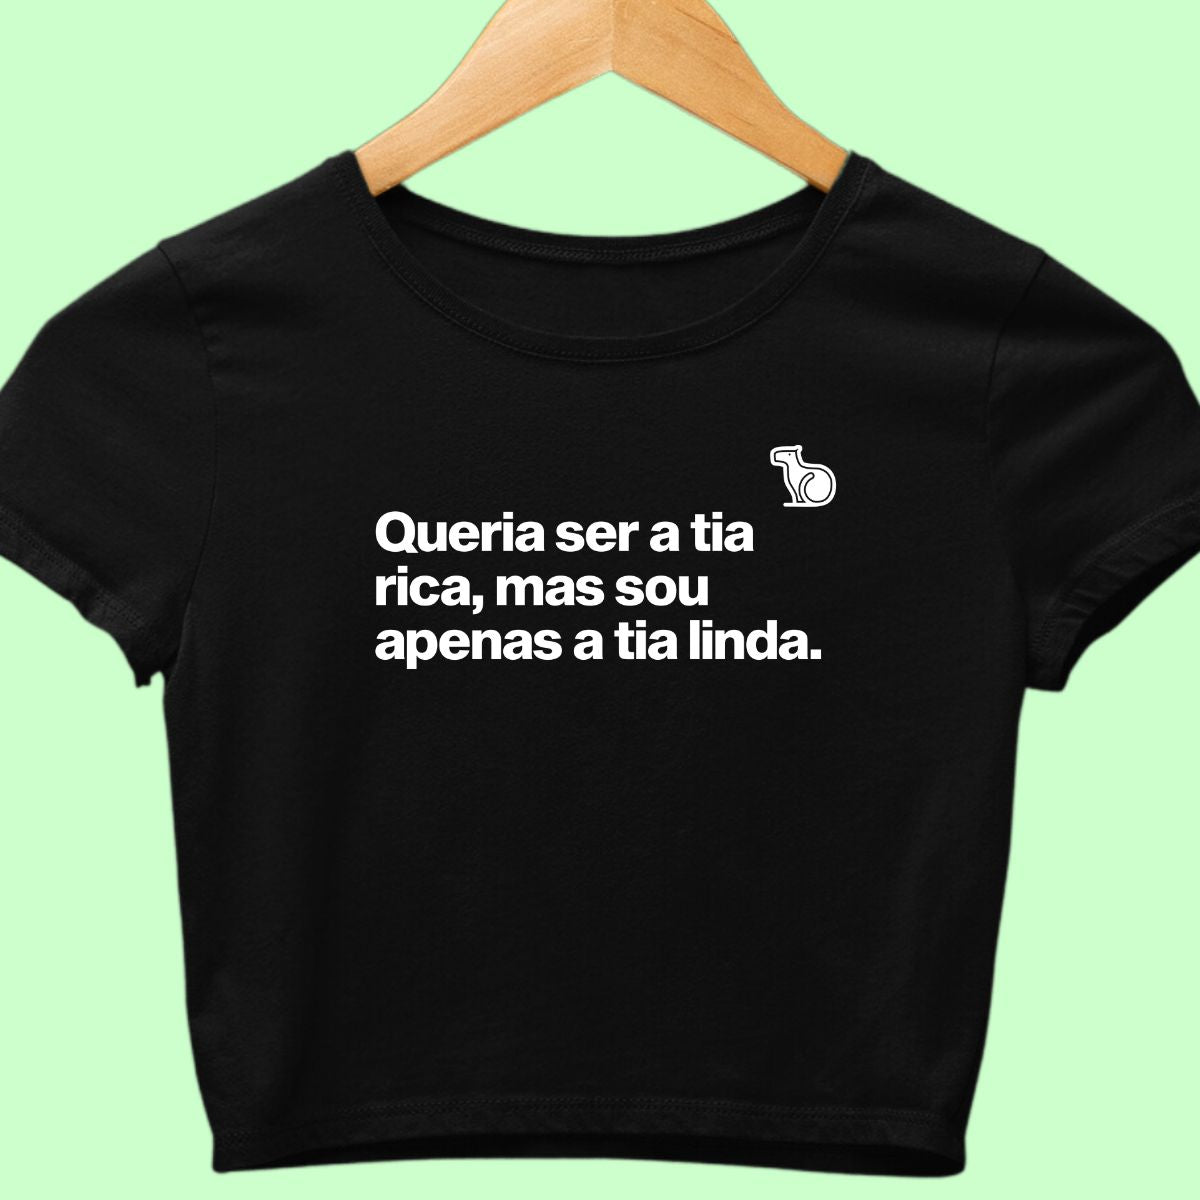 Camiseta cropped com a frase "Queria ser a tia rica, mas sou apenas a tia linda." preta.